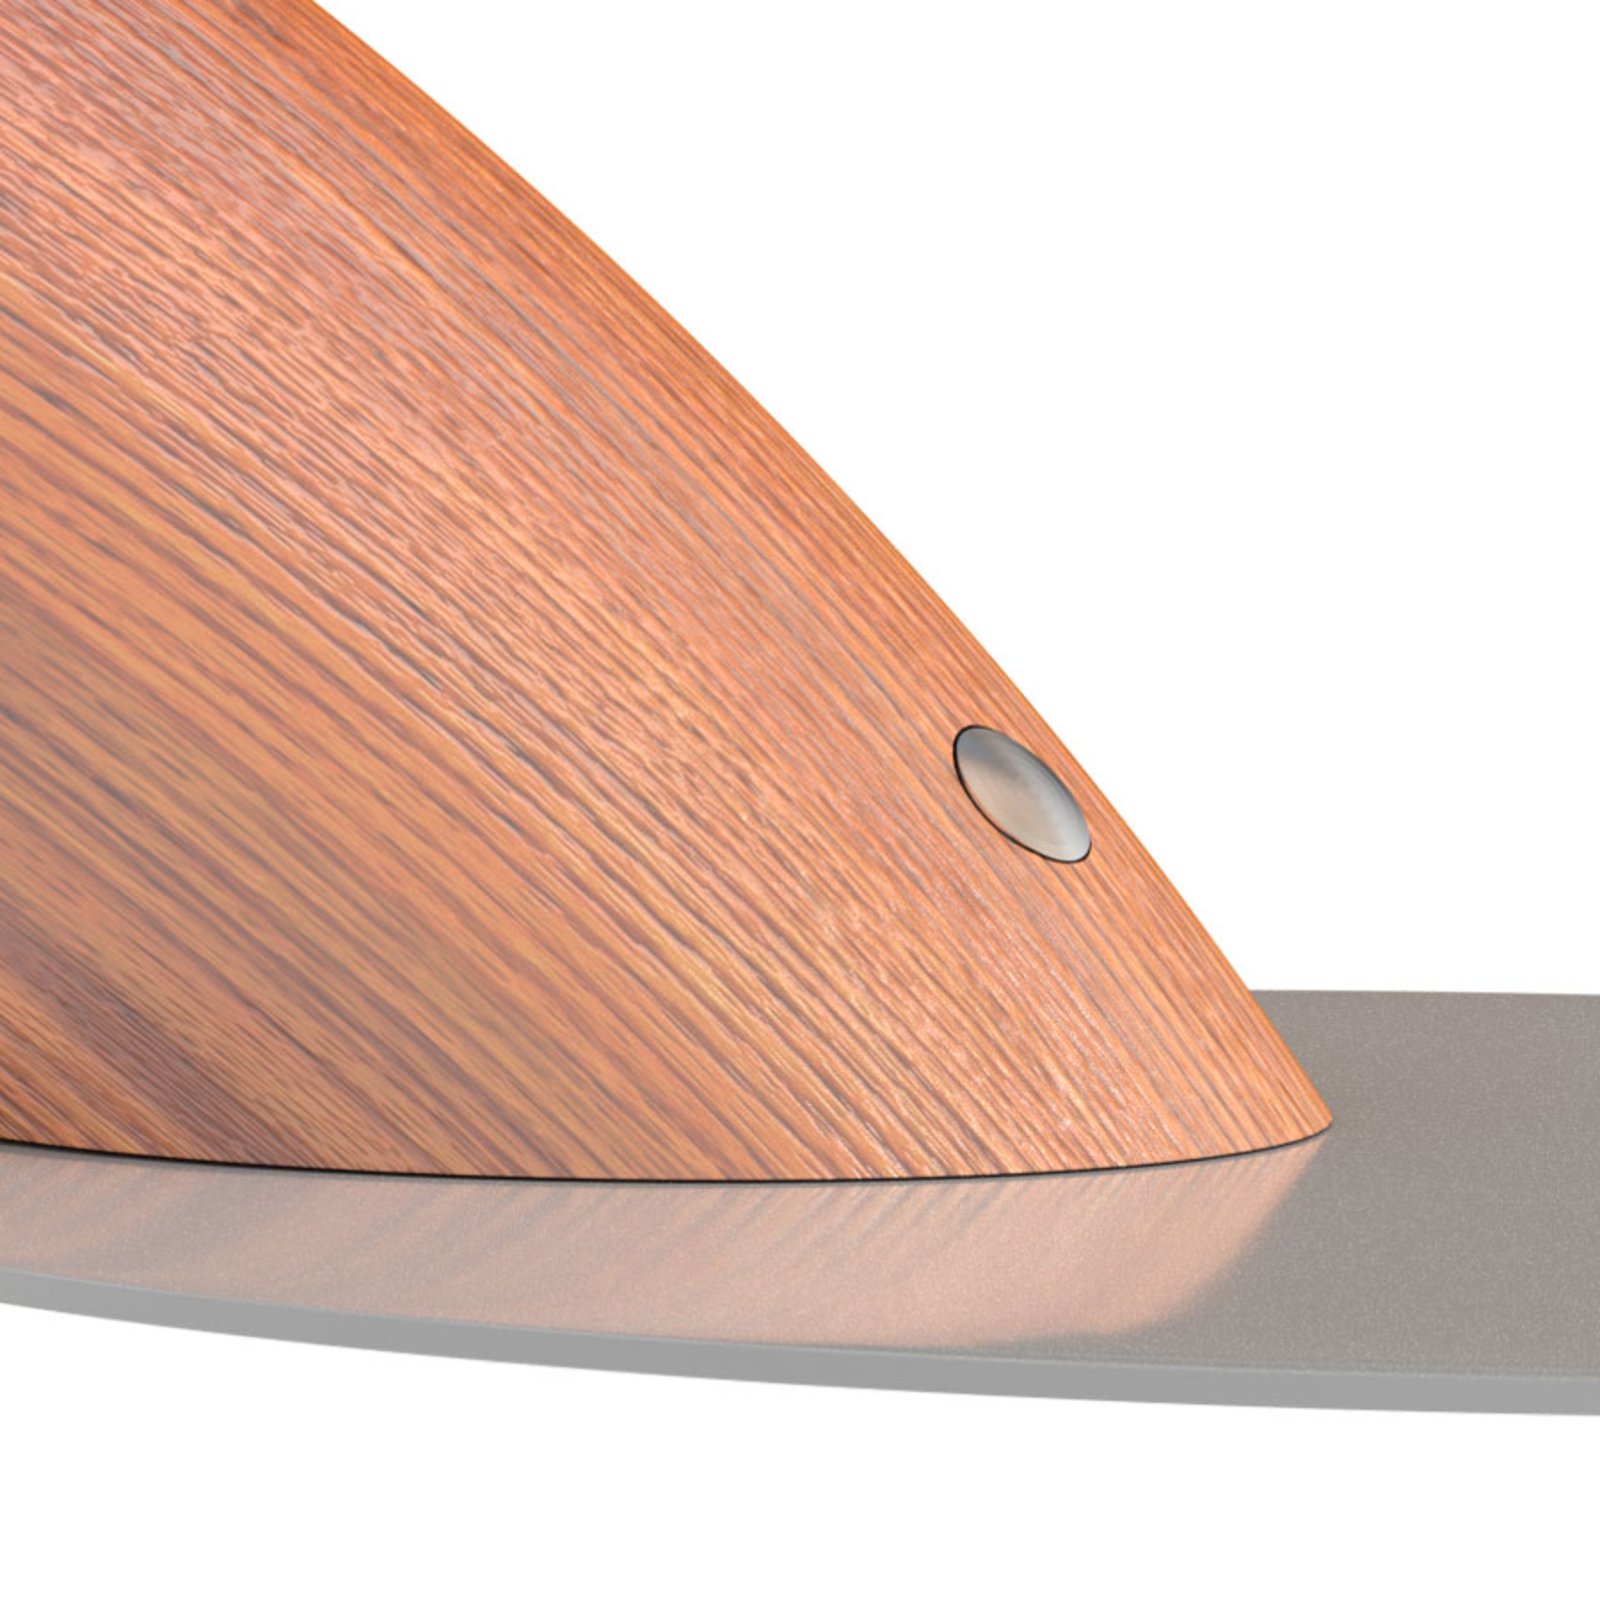 Swingo LED desk lamp with wood, grey